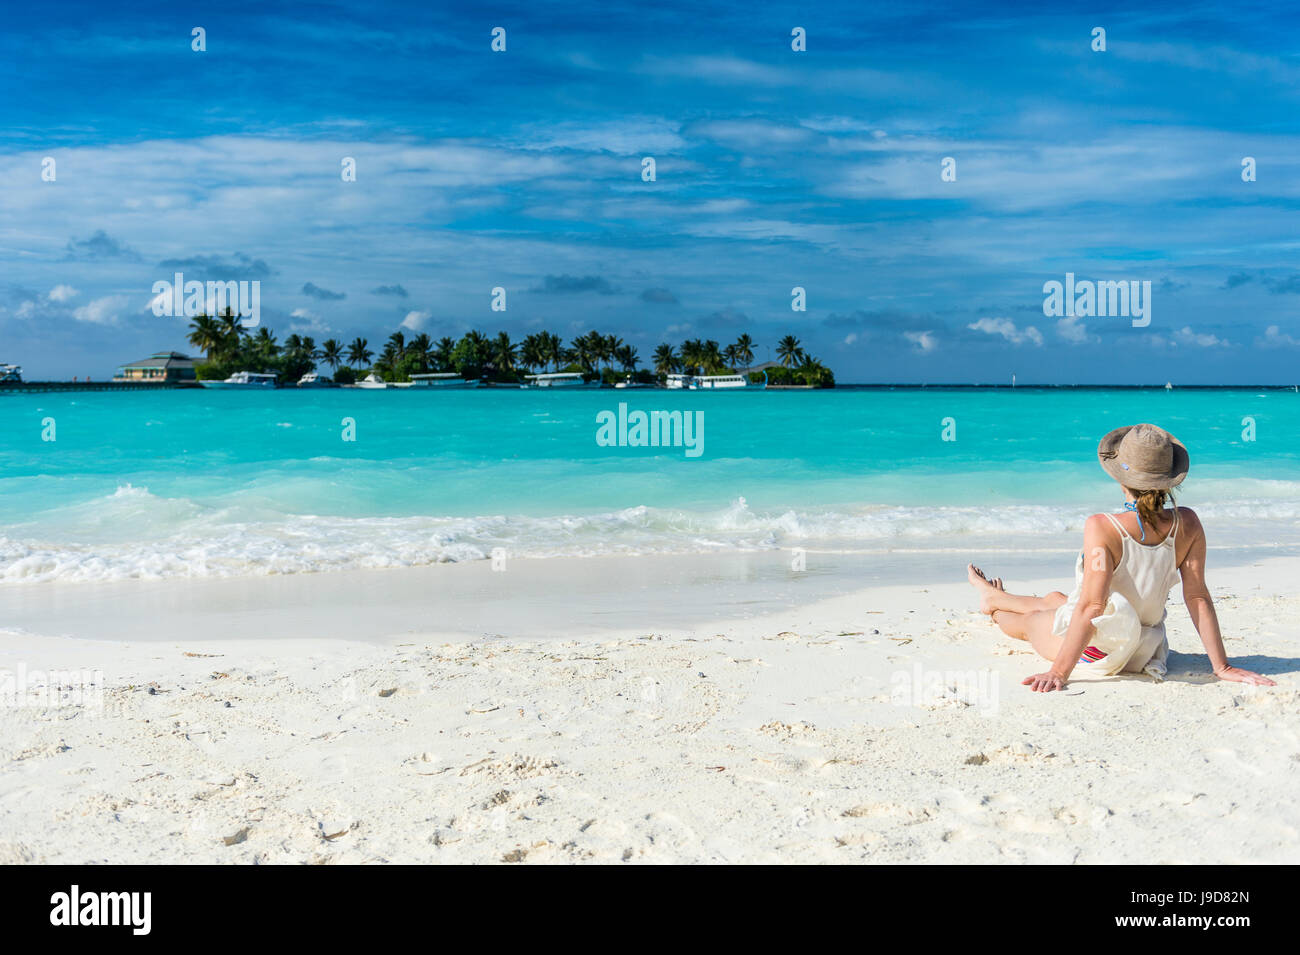 Una mujer sentada sobre una playa de arena blanca, disfrutando de las aguas turquesas, Sun Island Resort, isla de Nalaguraidhoo, Ari ATOLL, Maldivas Foto de stock